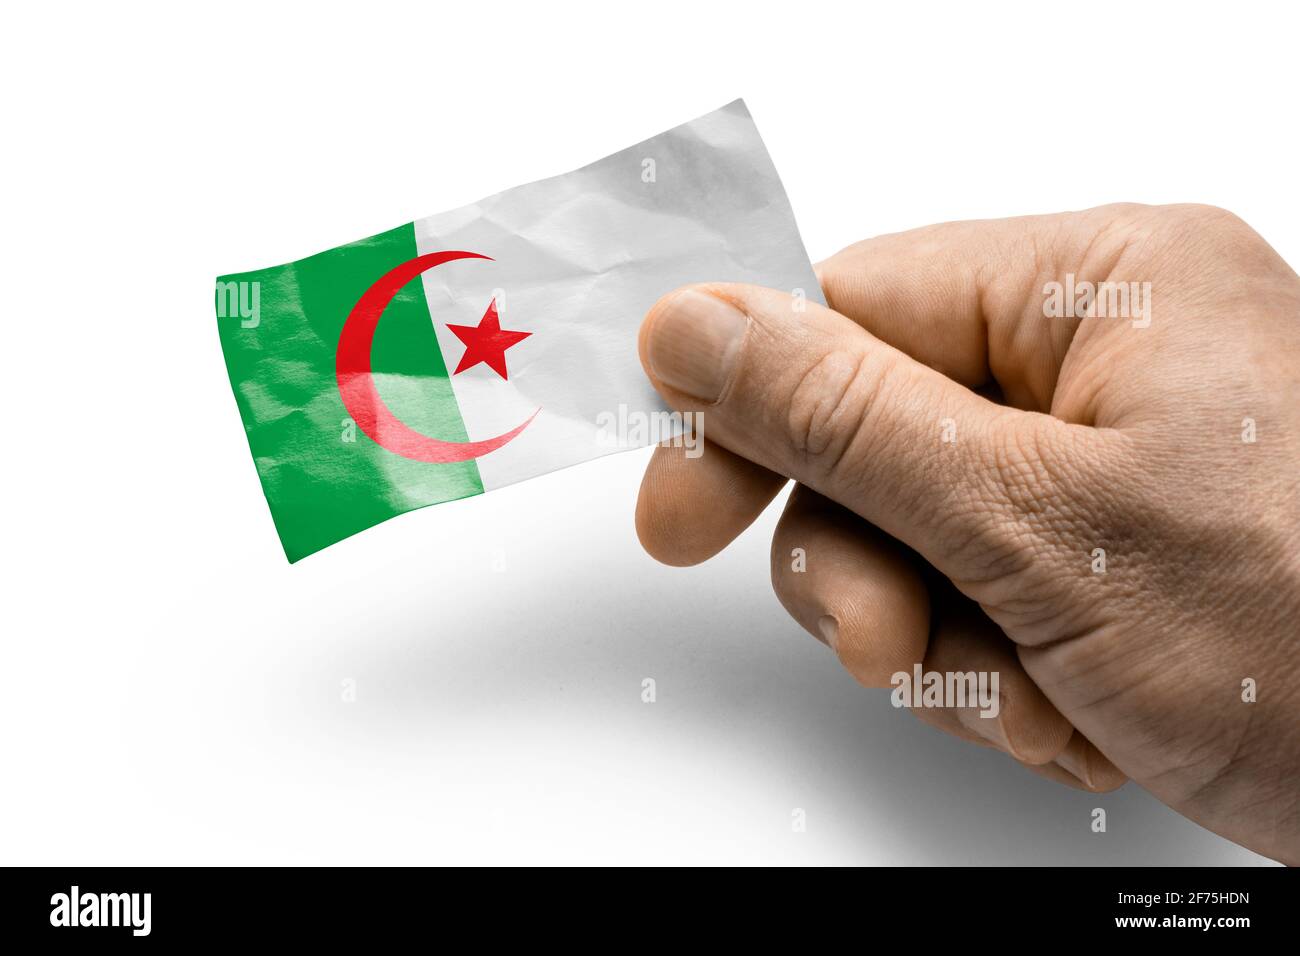 Mano che tiene una carta con una bandiera nazionale l'Algeria Foto Stock